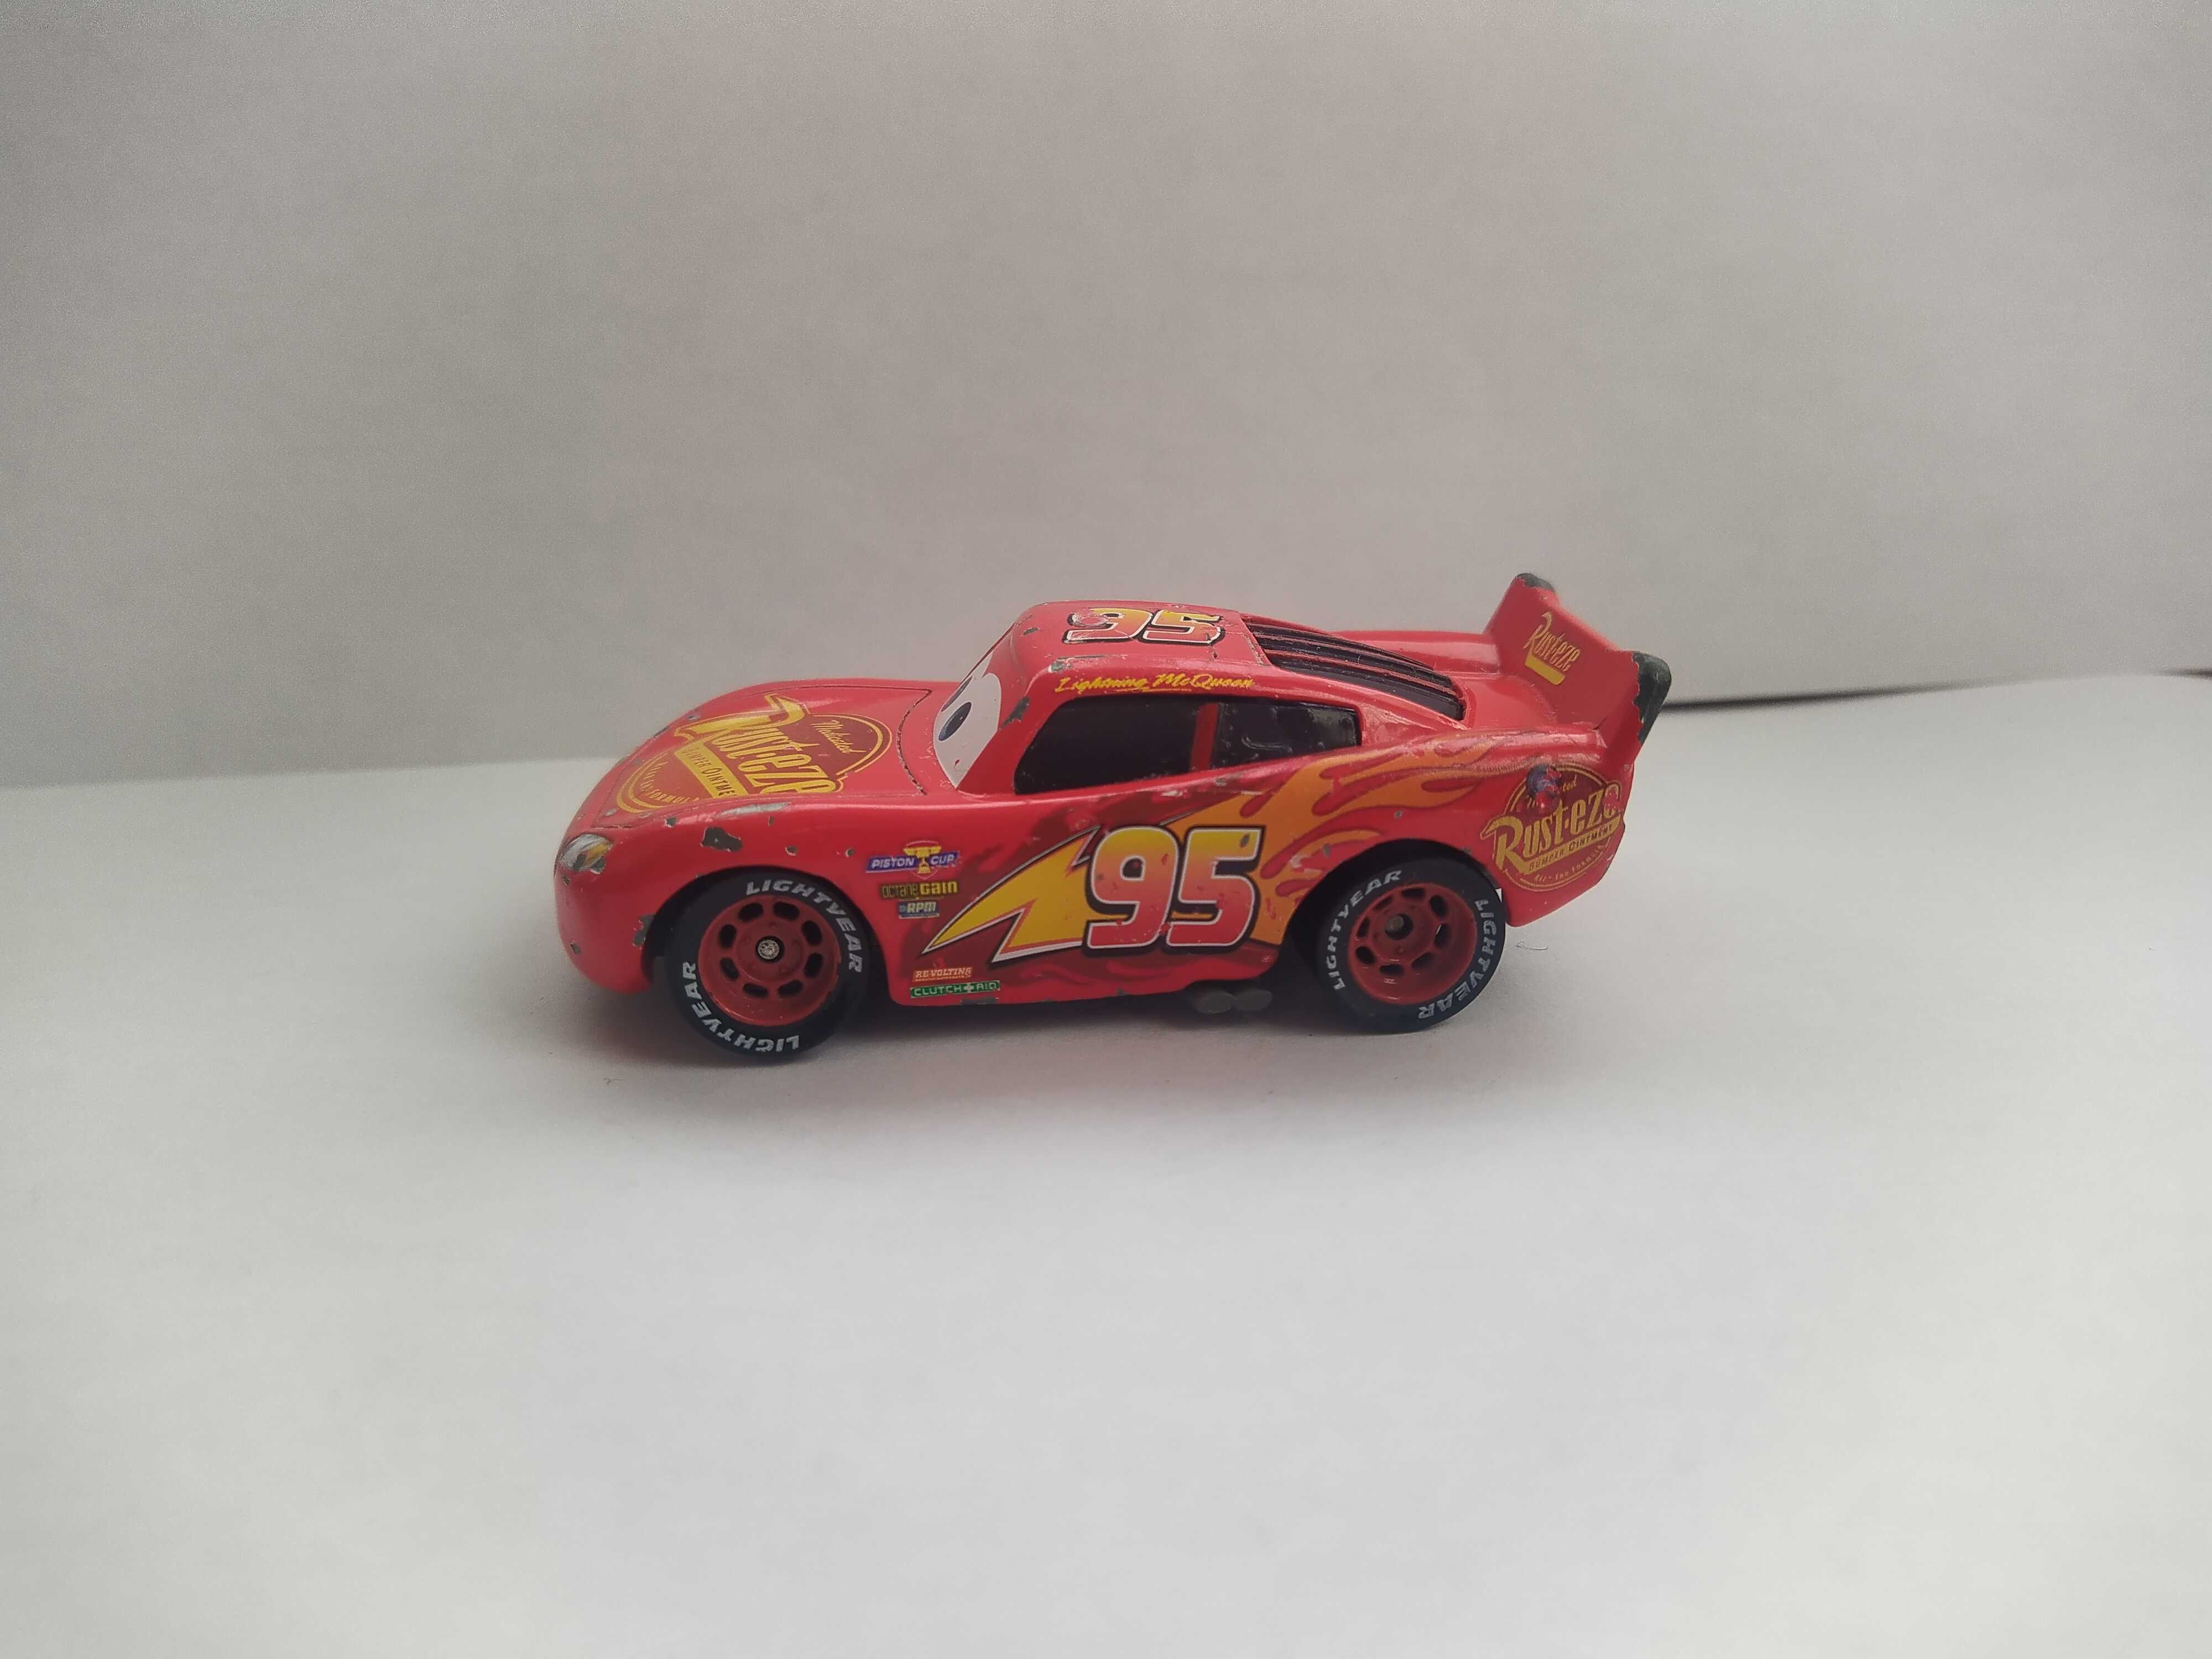 Auta Cars 3 - Zygzak McQueen Rust-eze #95- Disney/Pixar Mattel